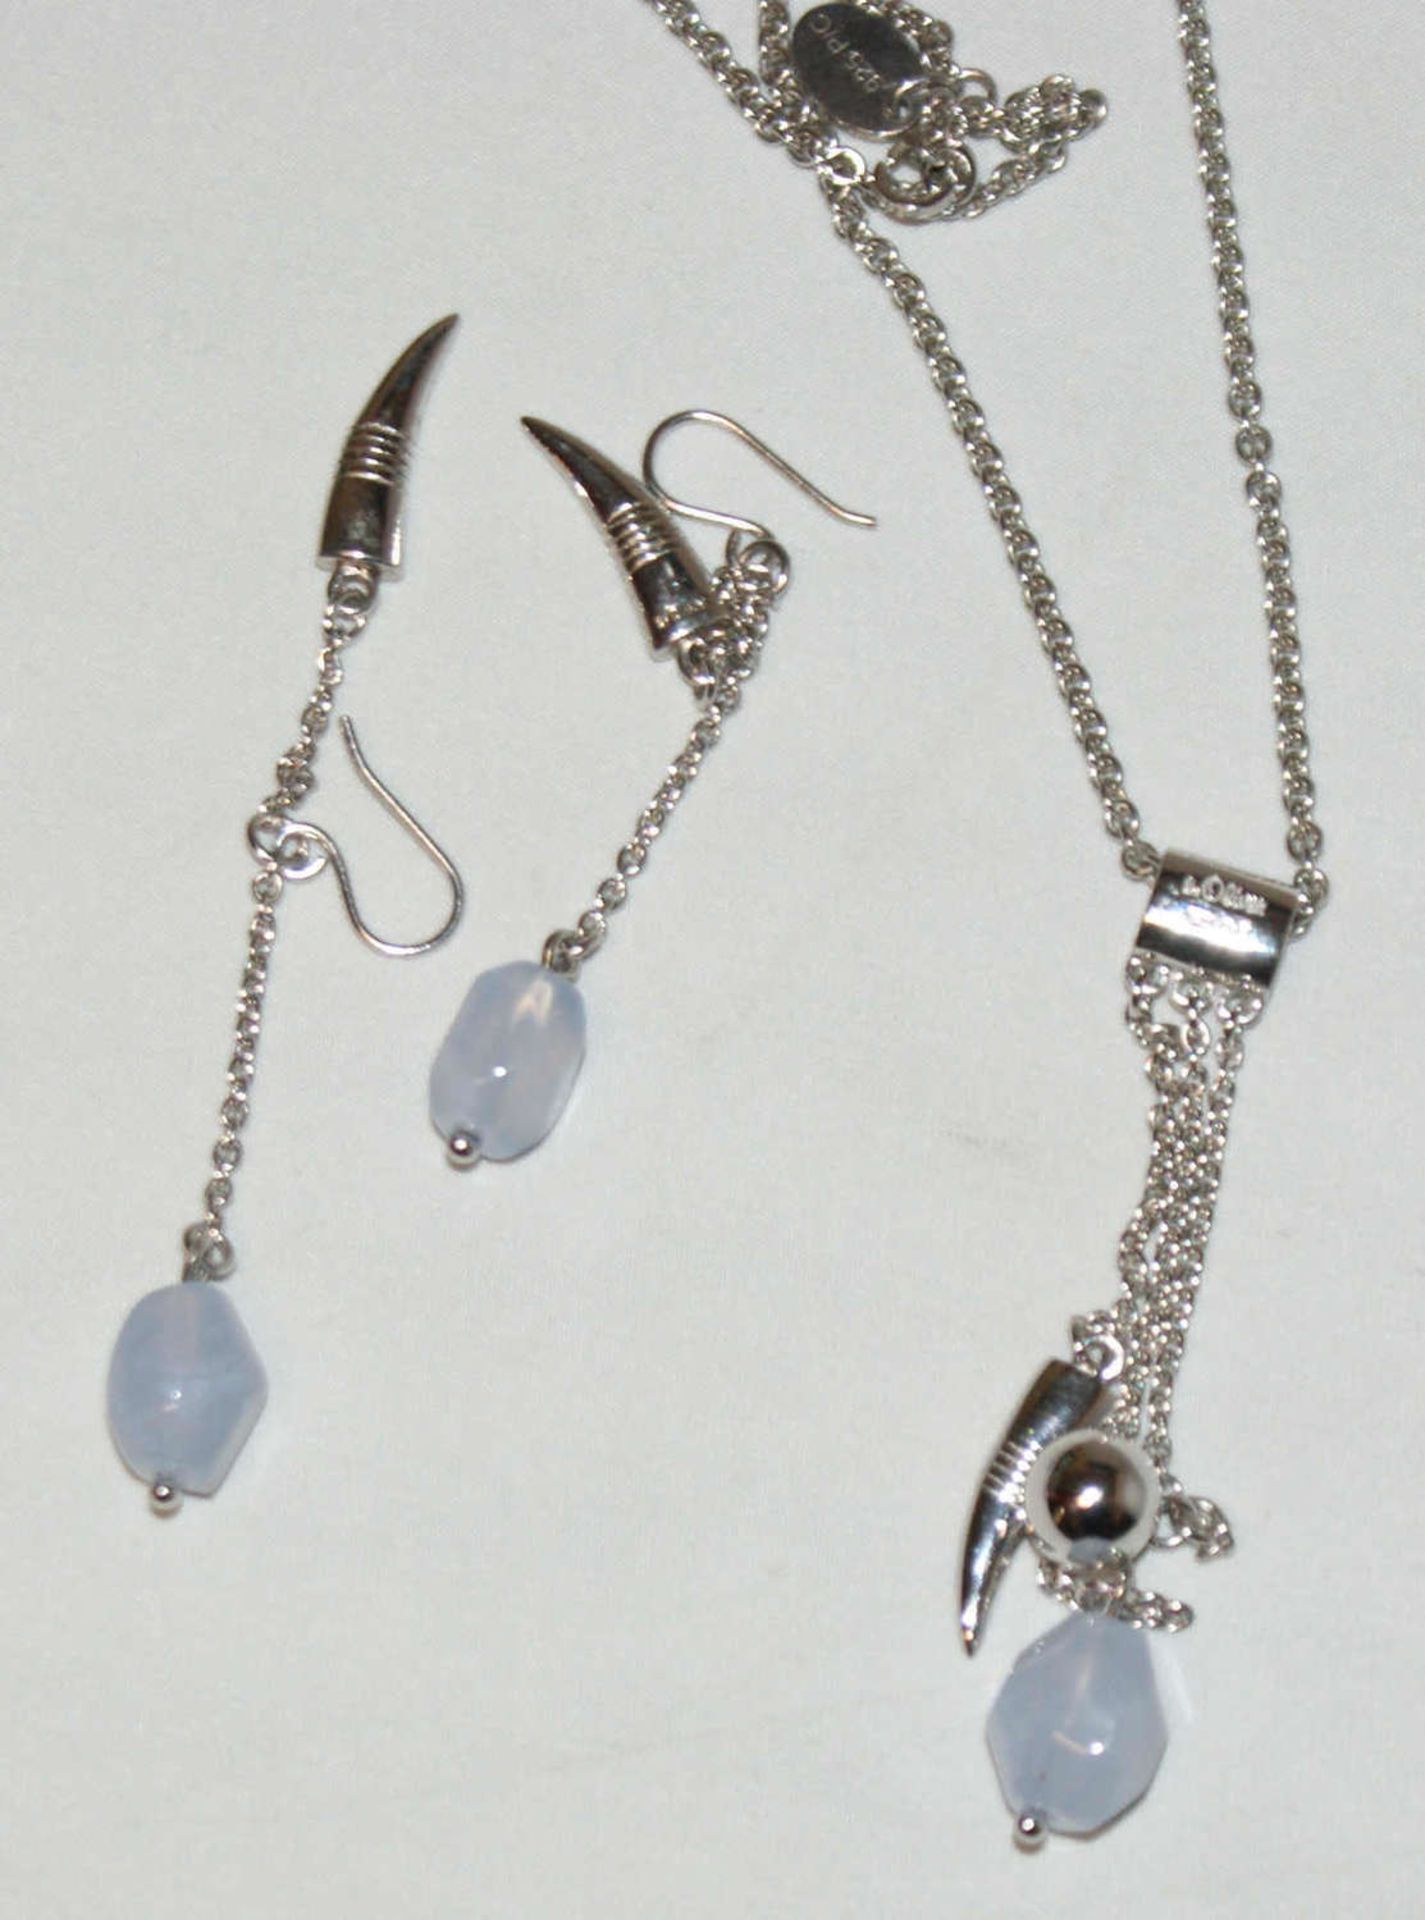 Schmuckset von s'oliver, bestehend aus 1 Collier, sowie 1 Paar passende Ohrringe. 925er Silber,